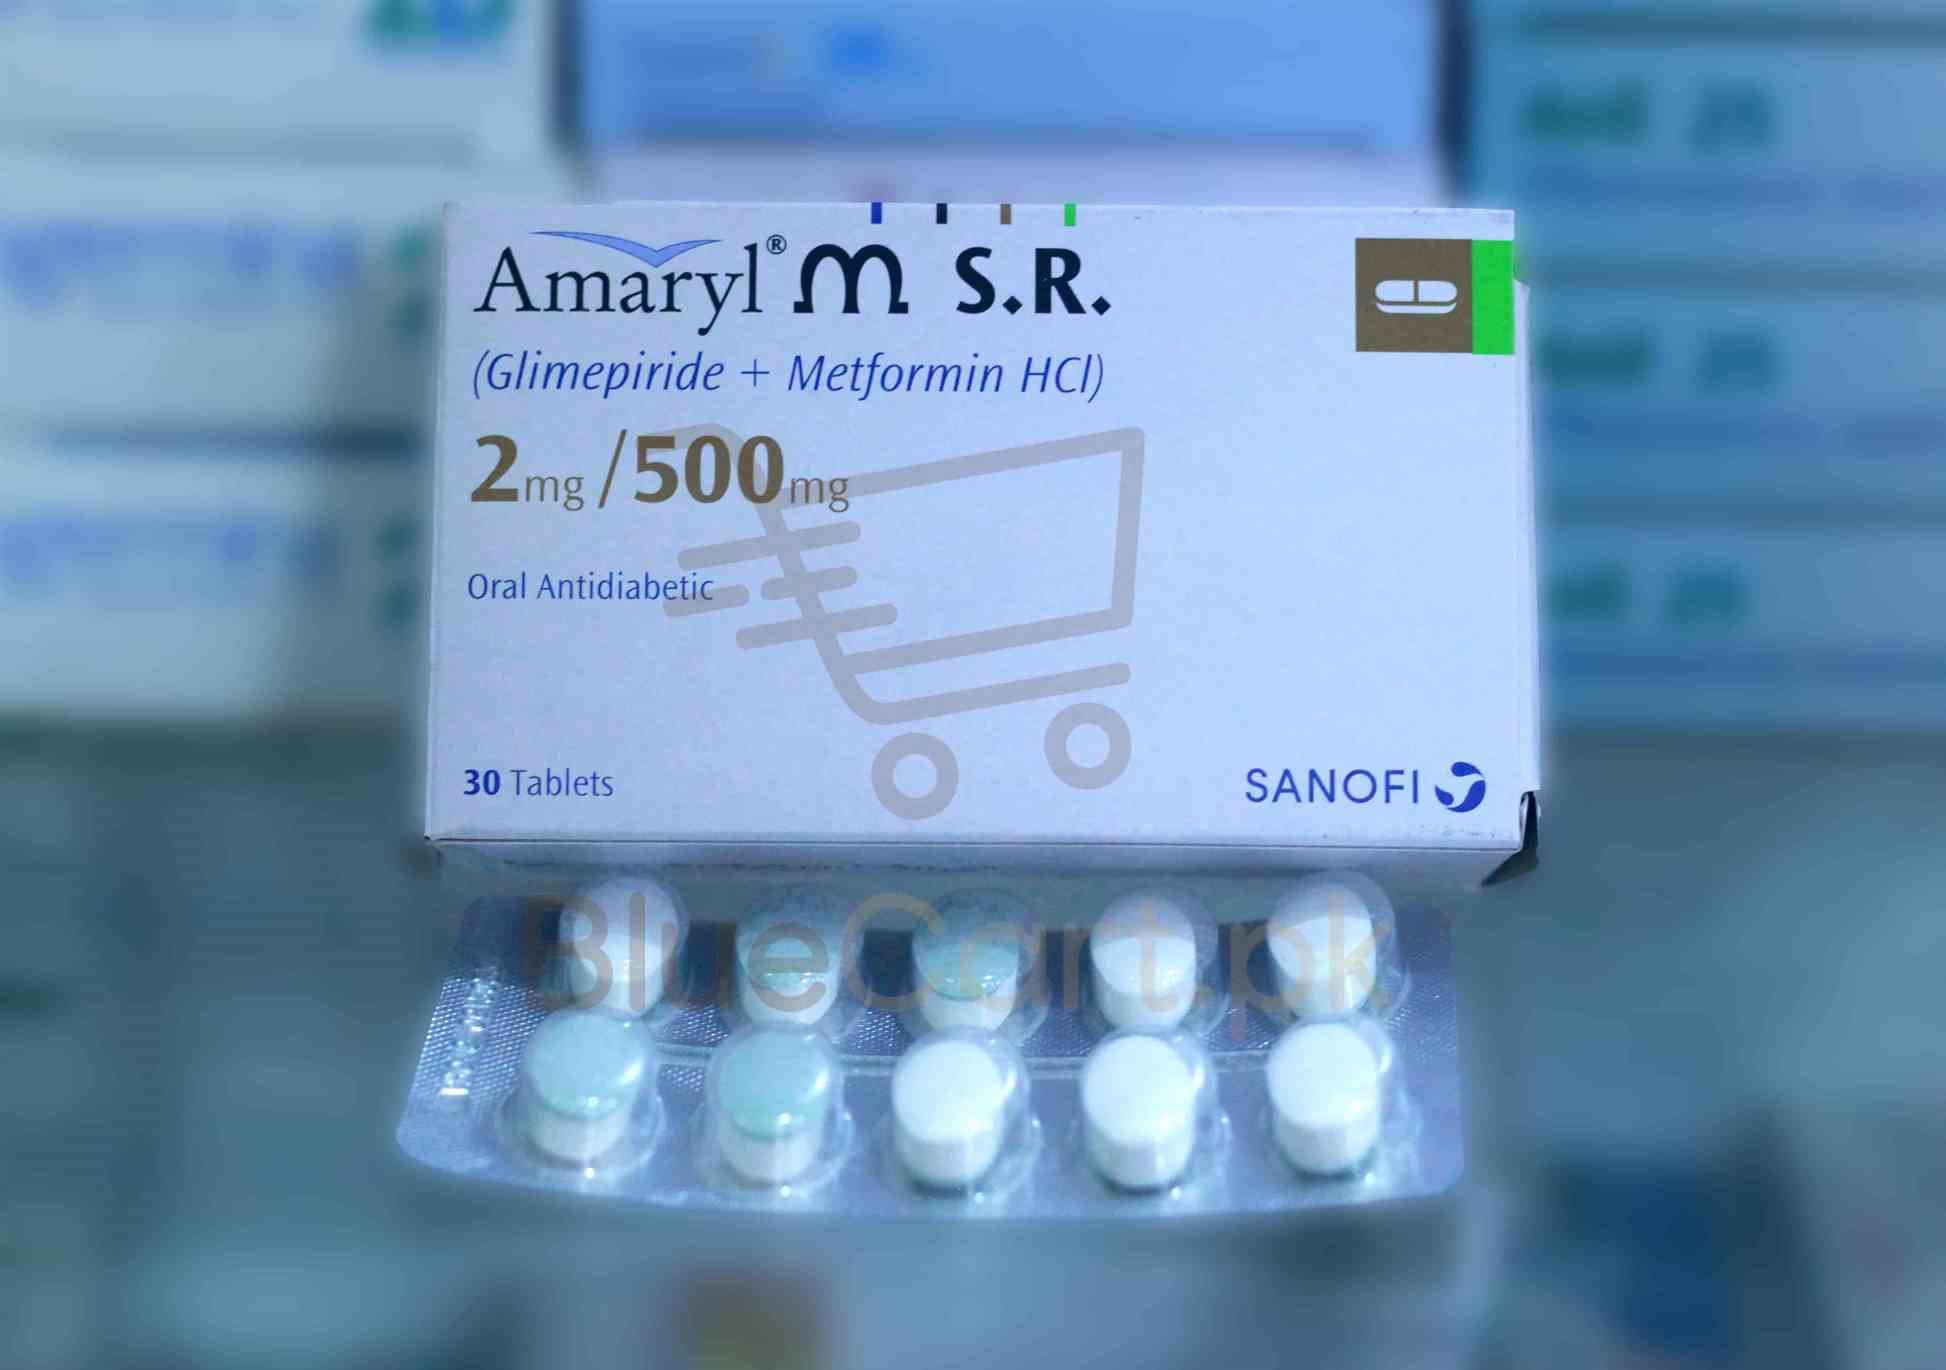 Amaryl Msr Tablet 2-500mg